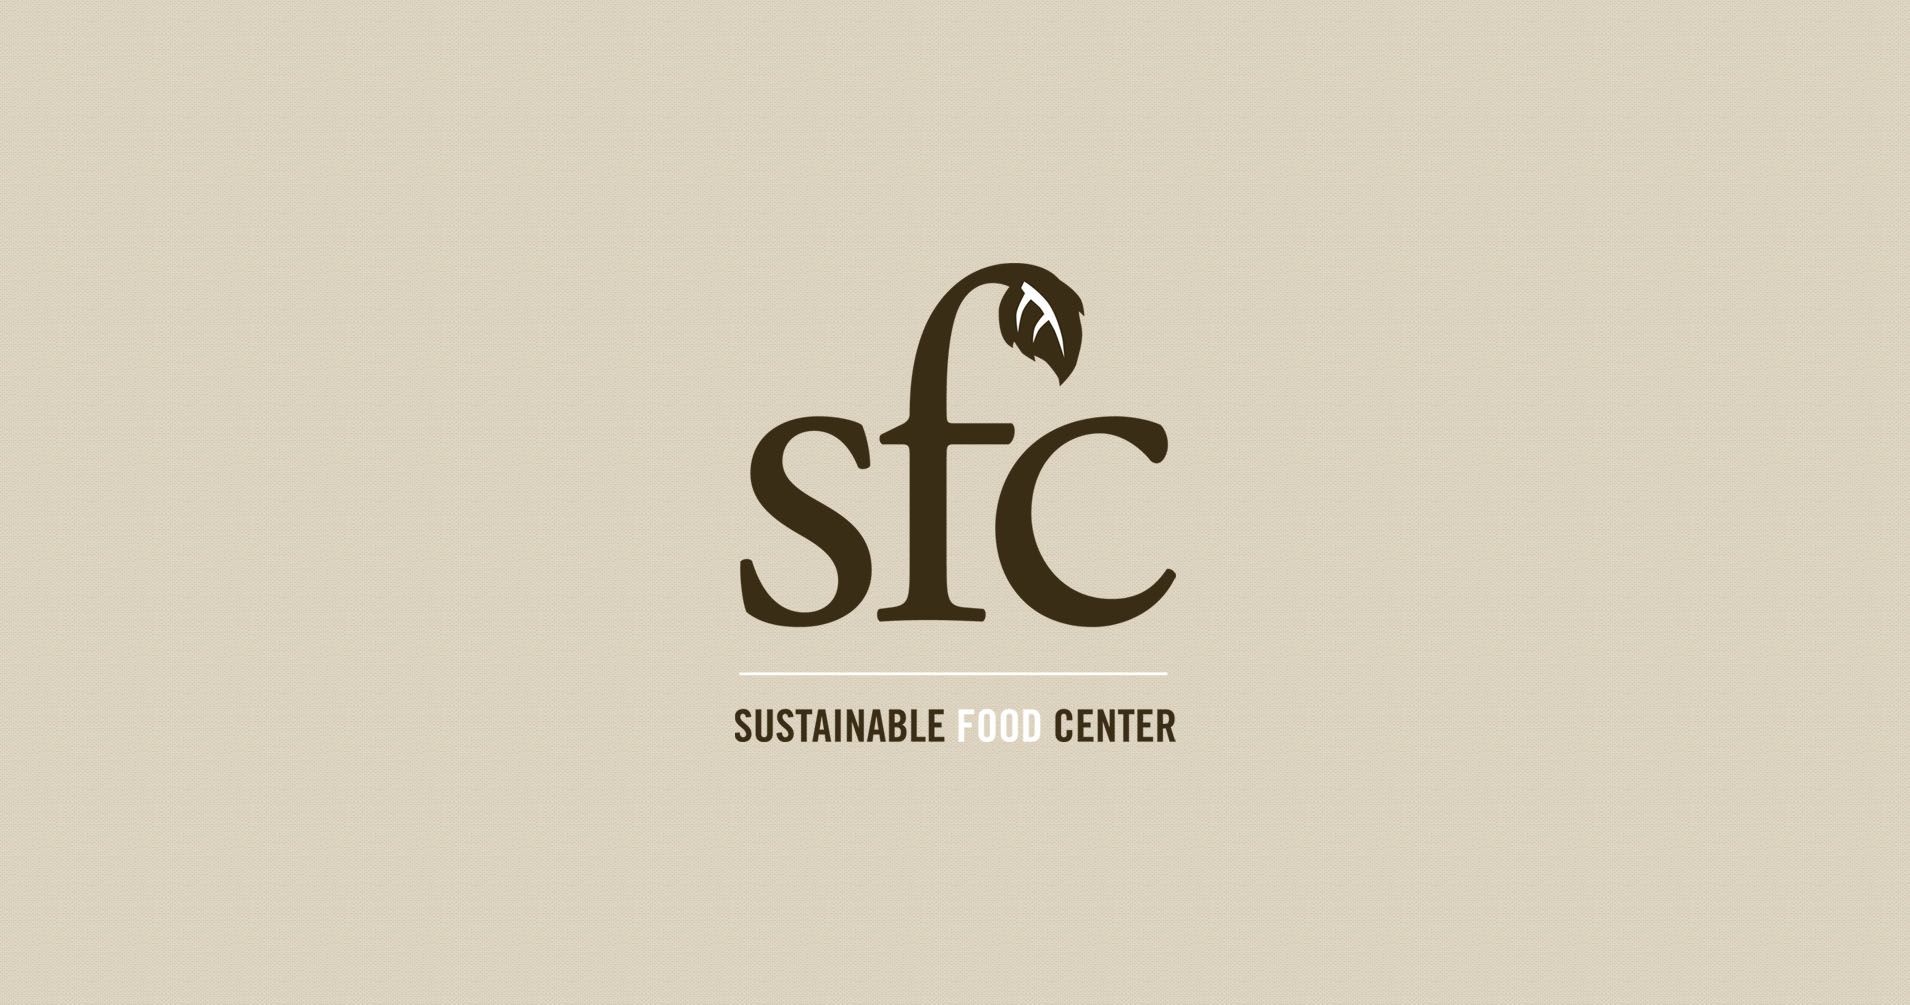 SFC Old School logo by lamonttroop on DeviantArt